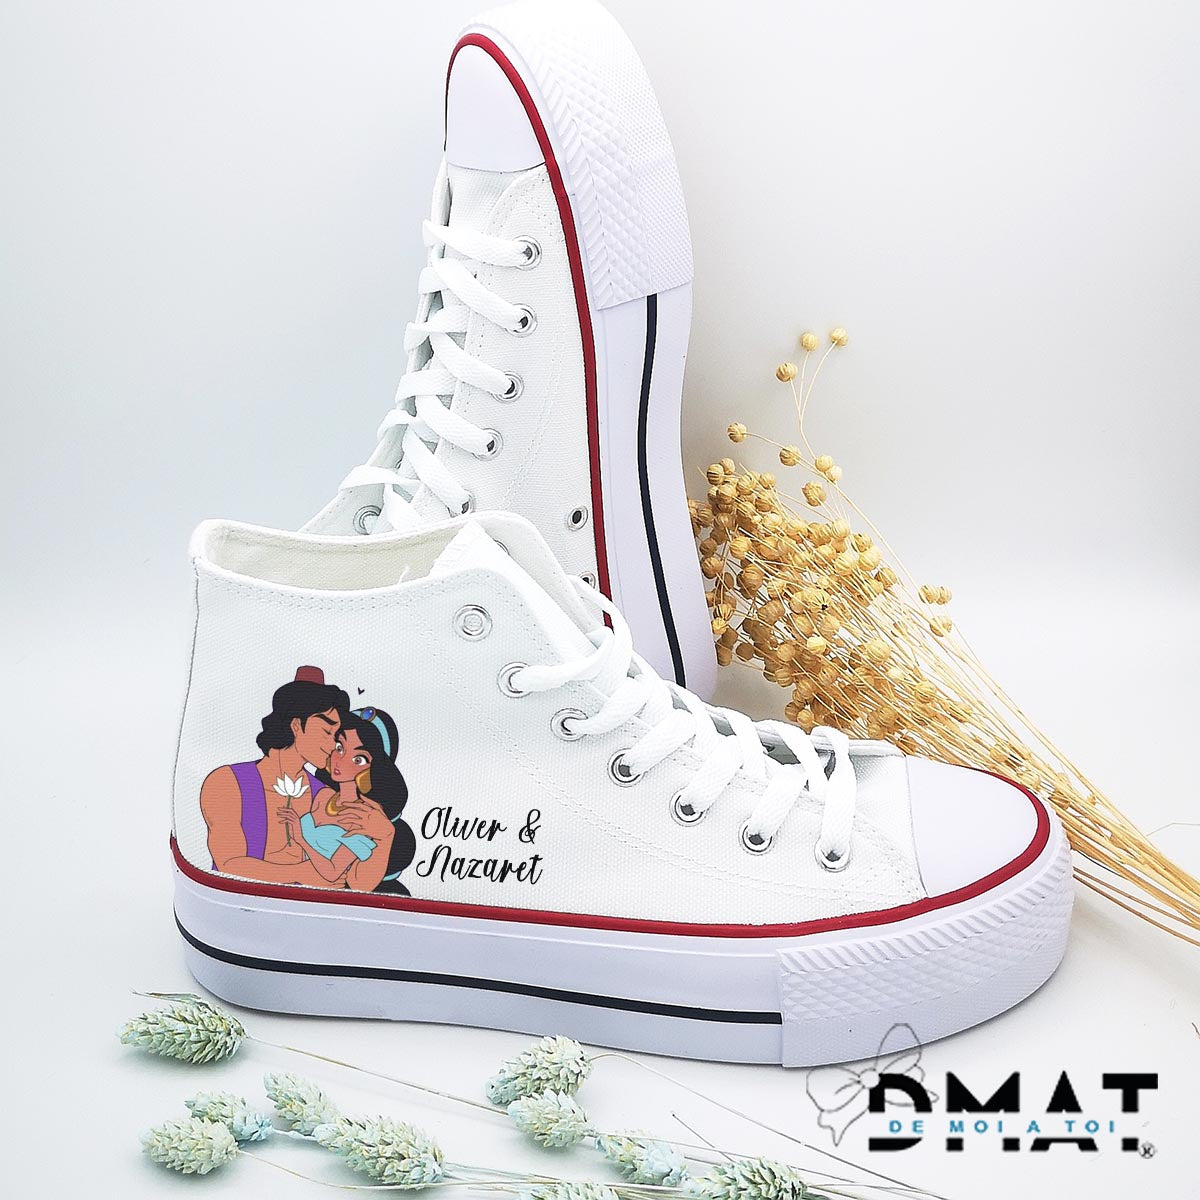 Zapatillas disney personalizadas para bodas - Aladine y Jasmine - De moi a toi